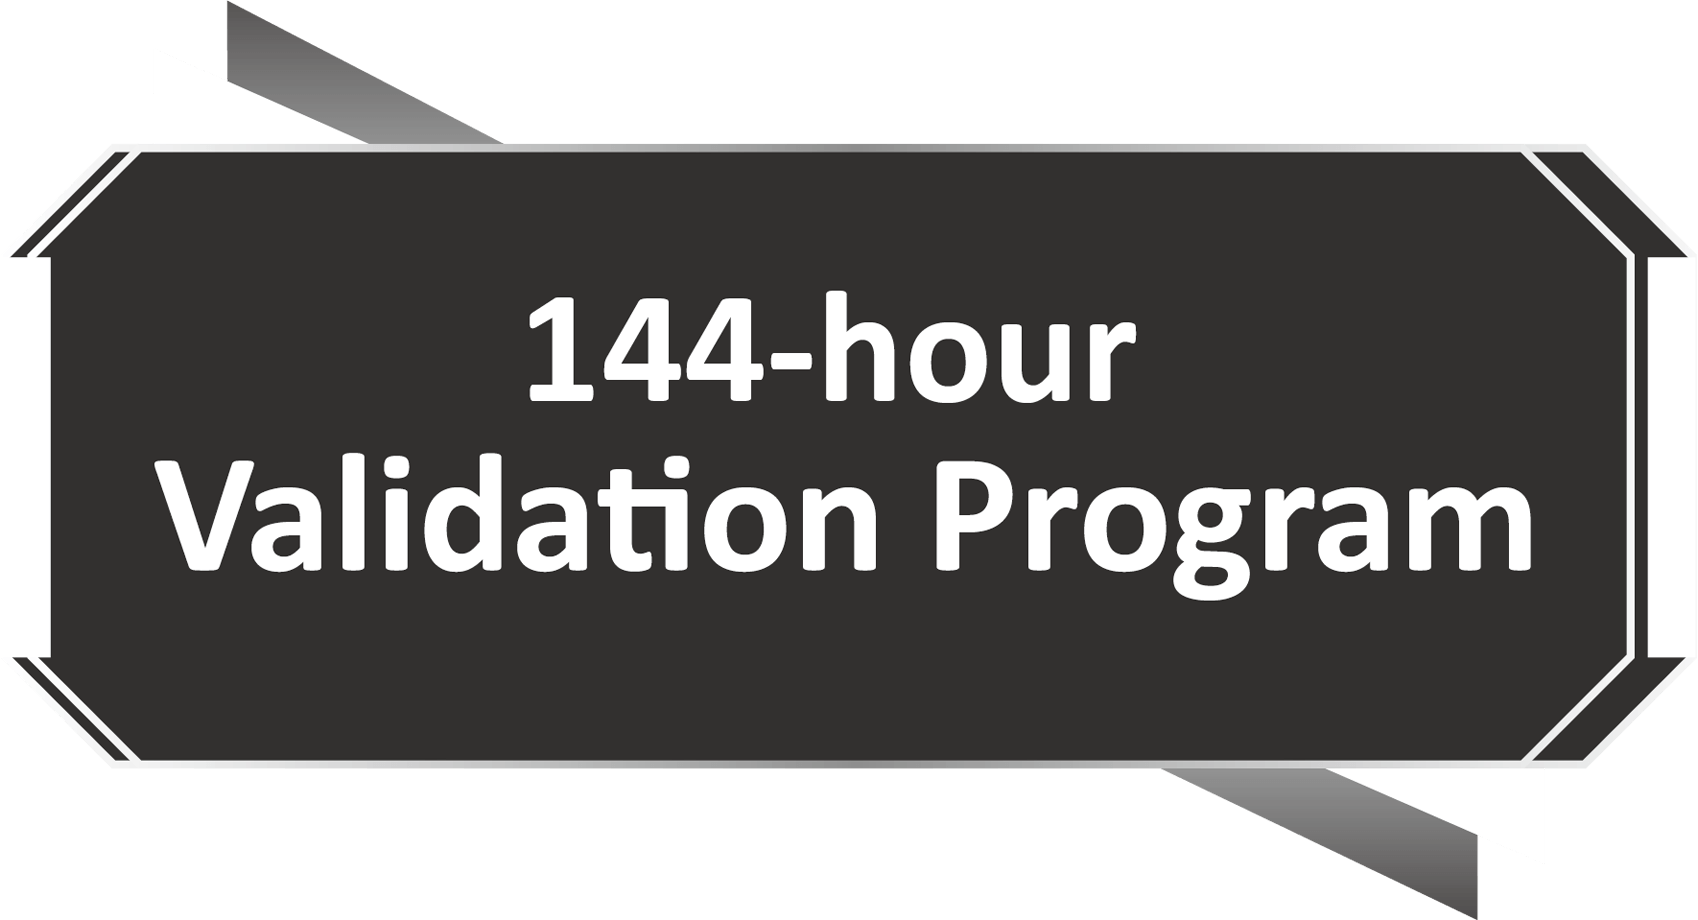 Programa de validación de 144 horas